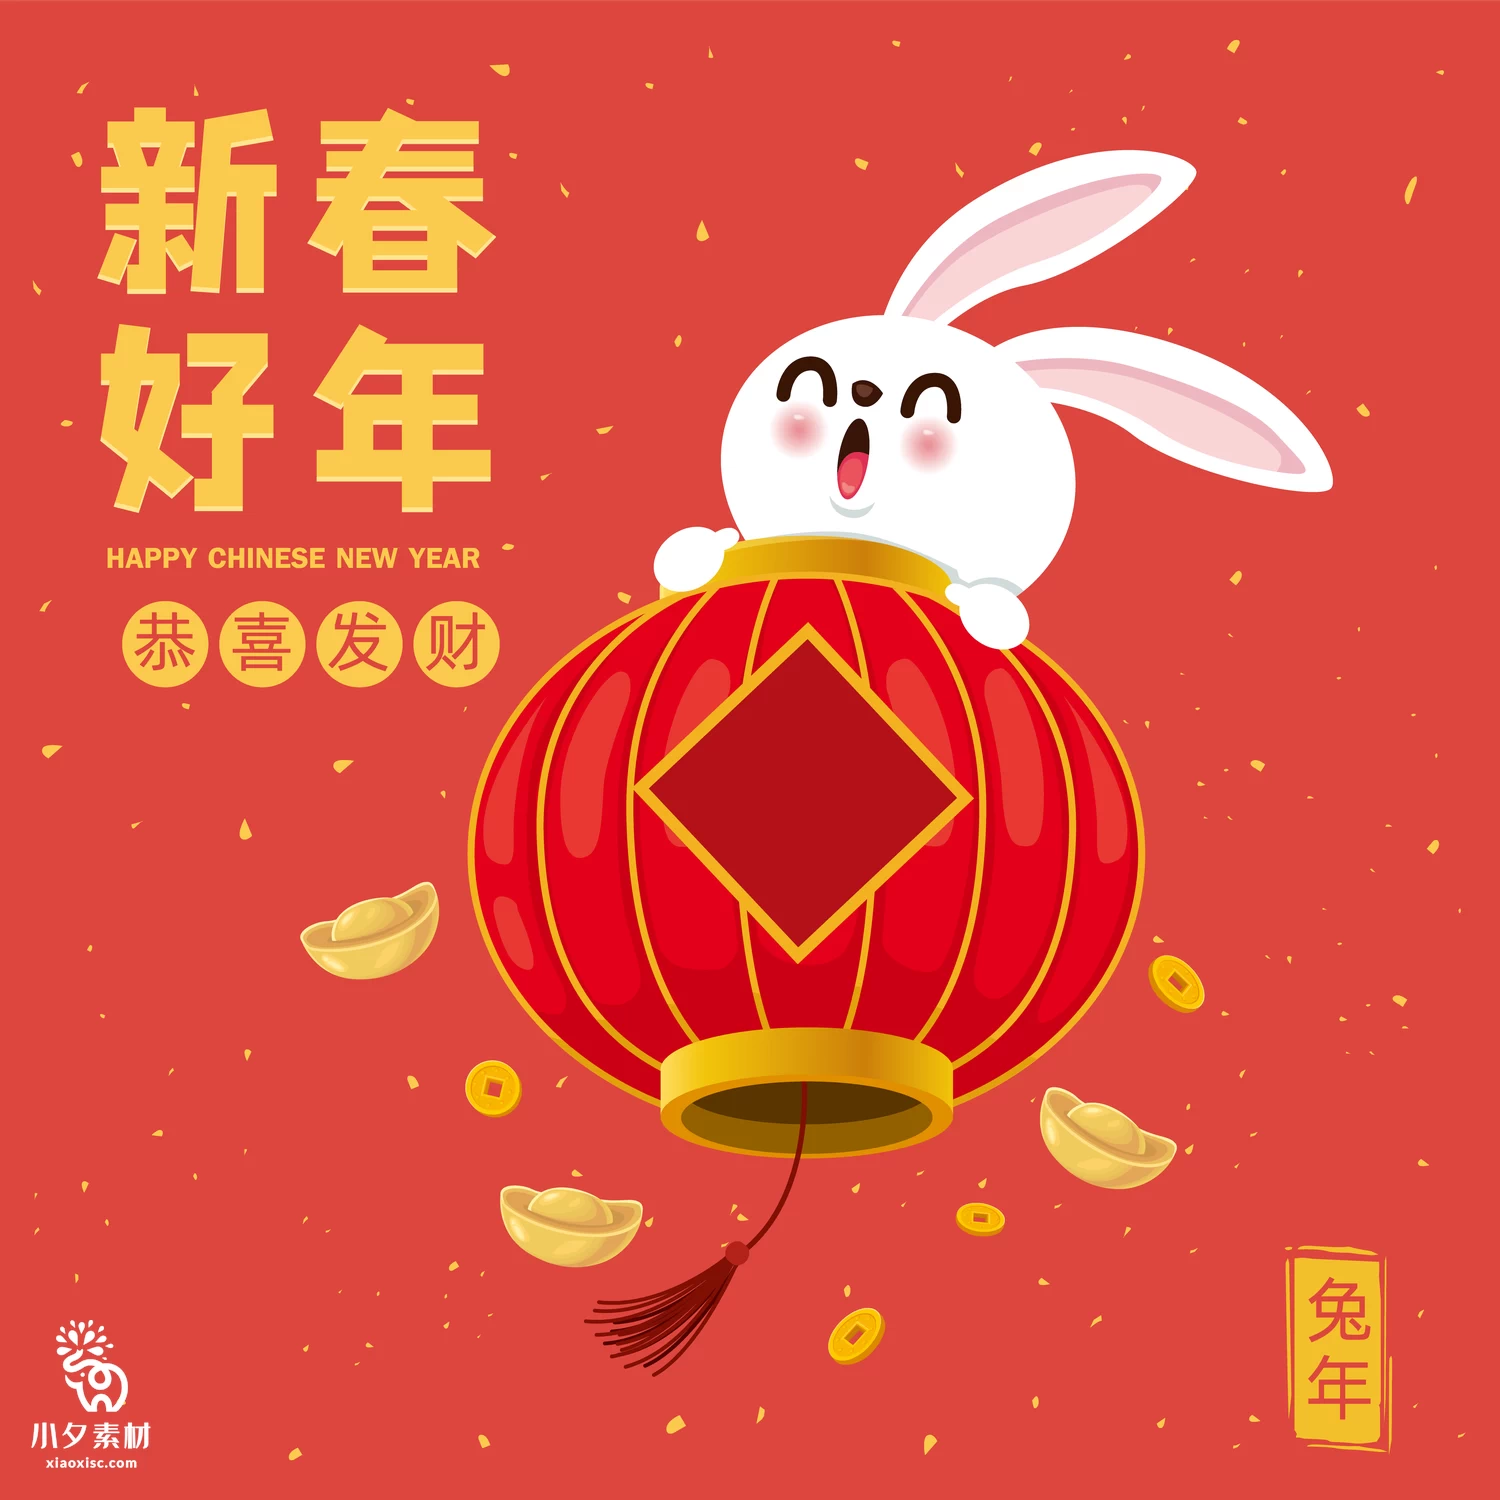 2023年兔年恭贺新春新年快乐喜庆节日宣传海报图片AI矢量设计素材【013】